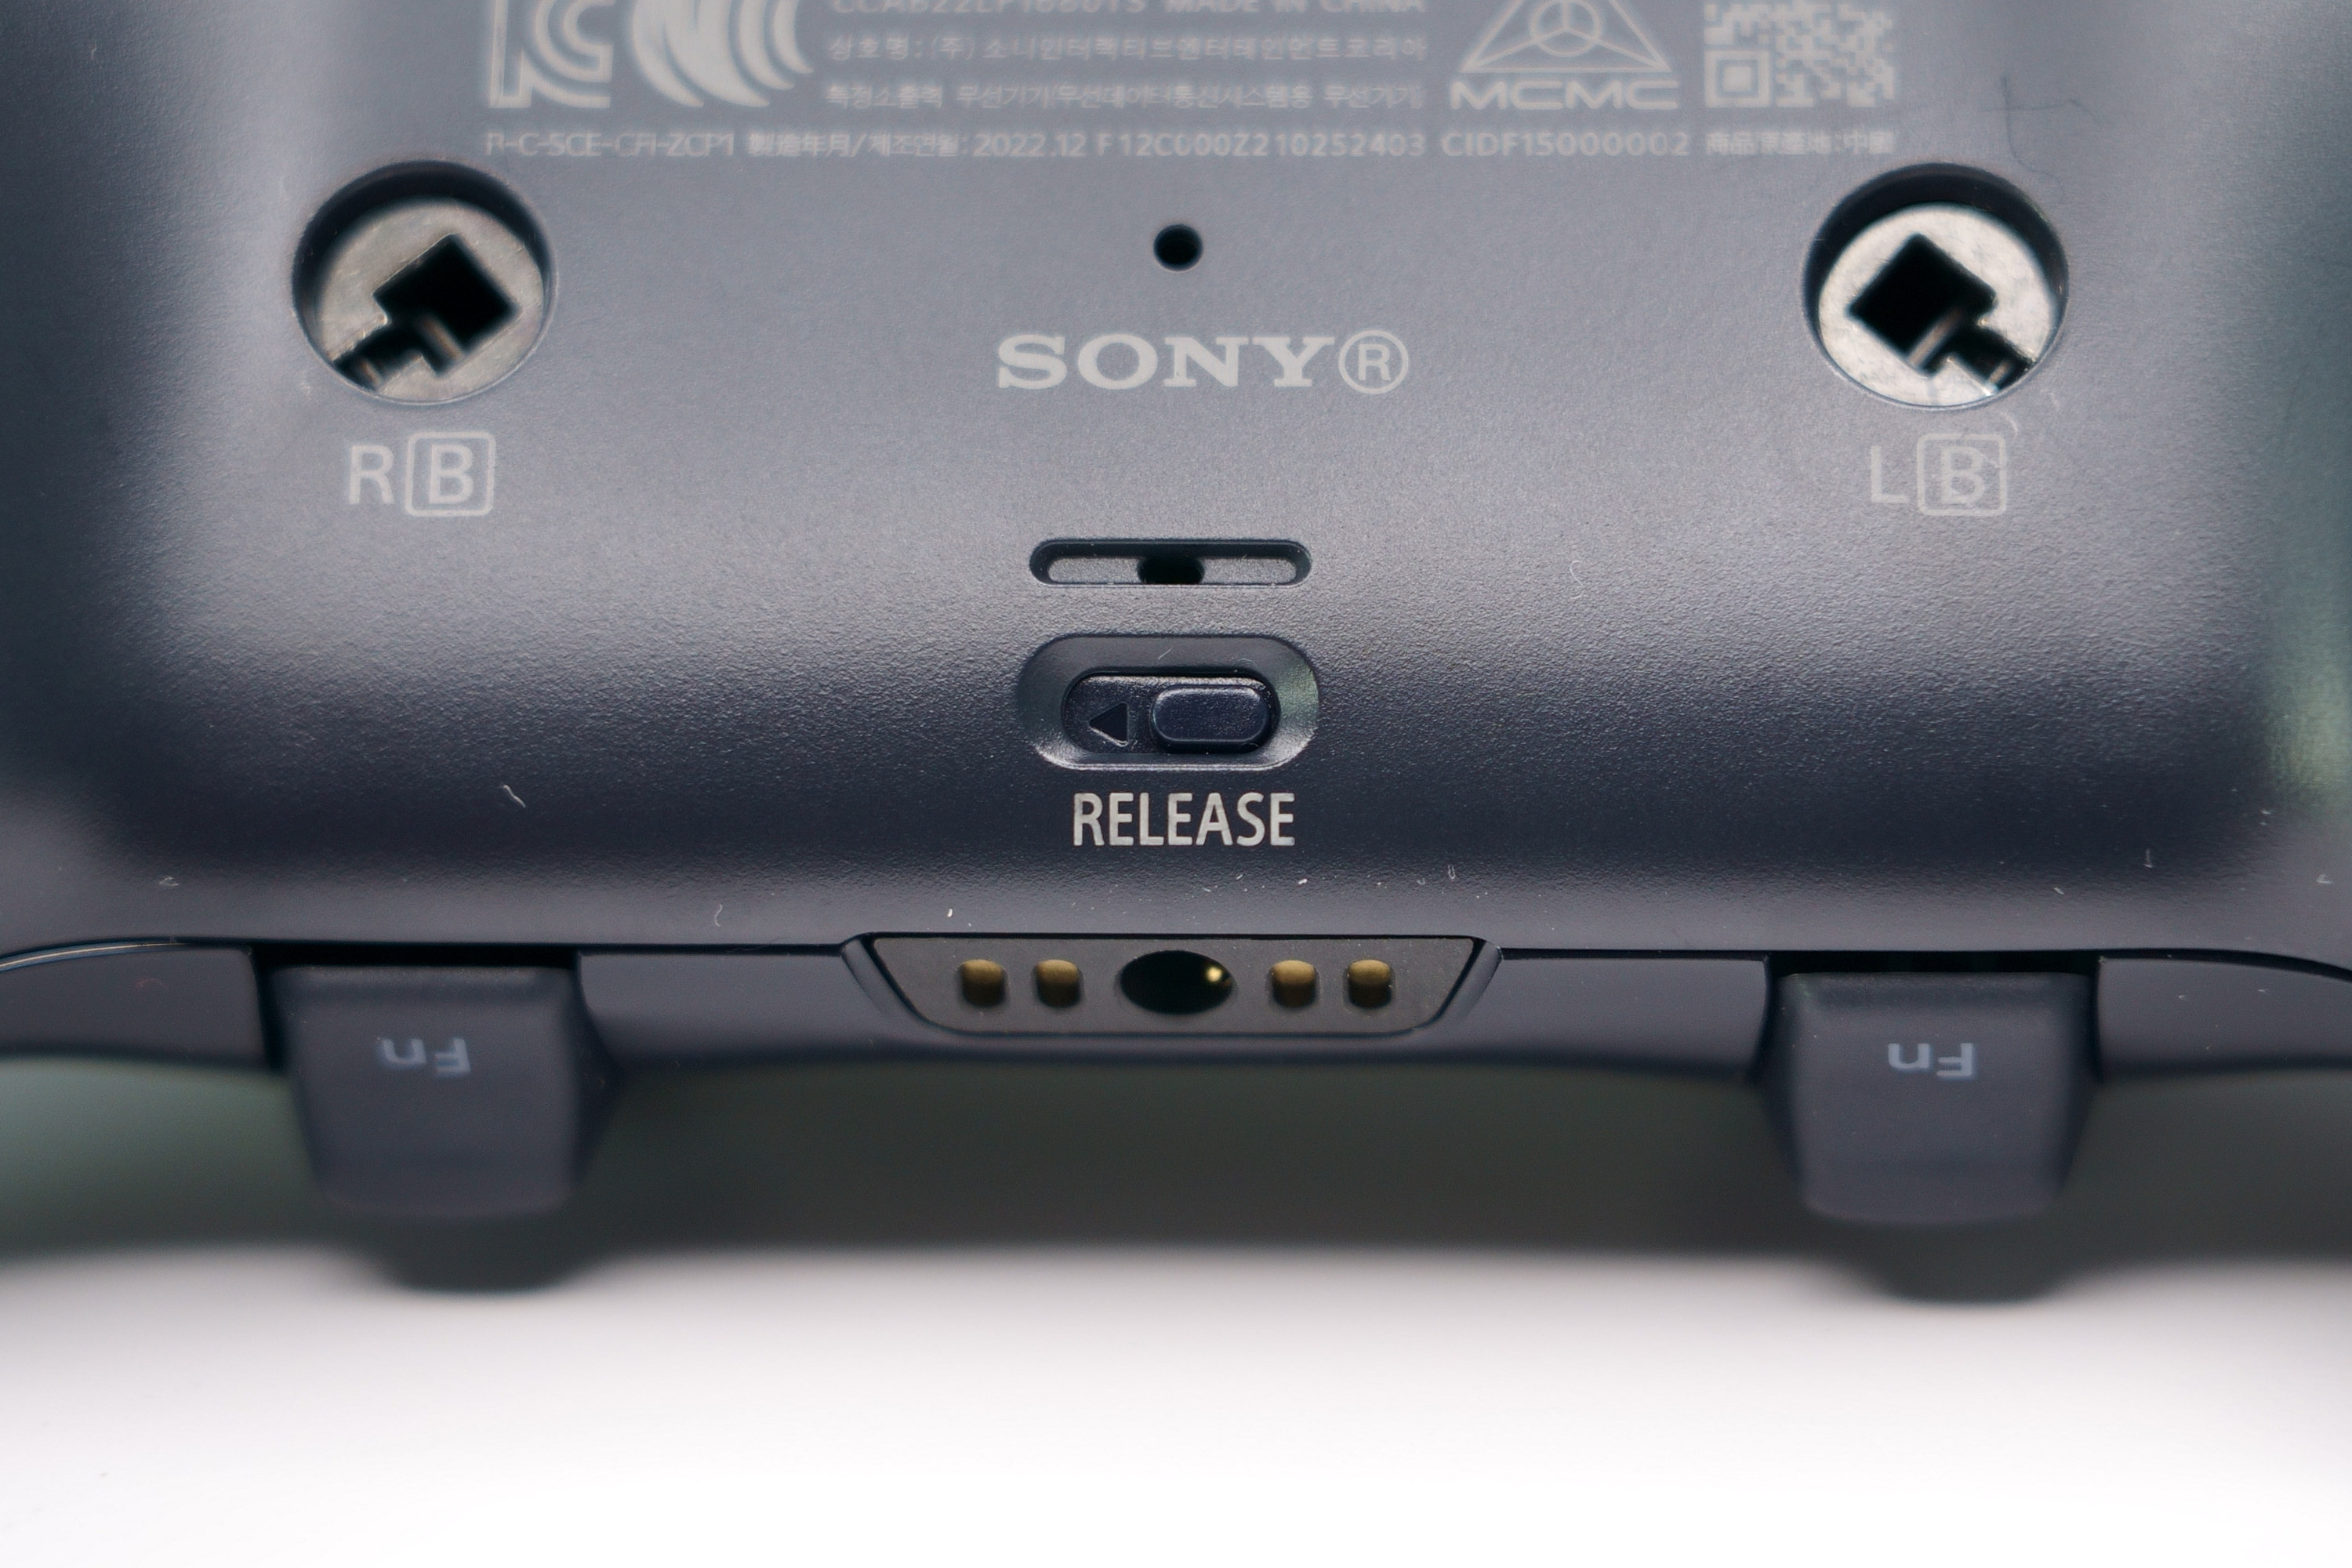 PS5 DualSense Edge 高效能控制器一手开箱 丰富自订功能满足各类型玩家需求插图44